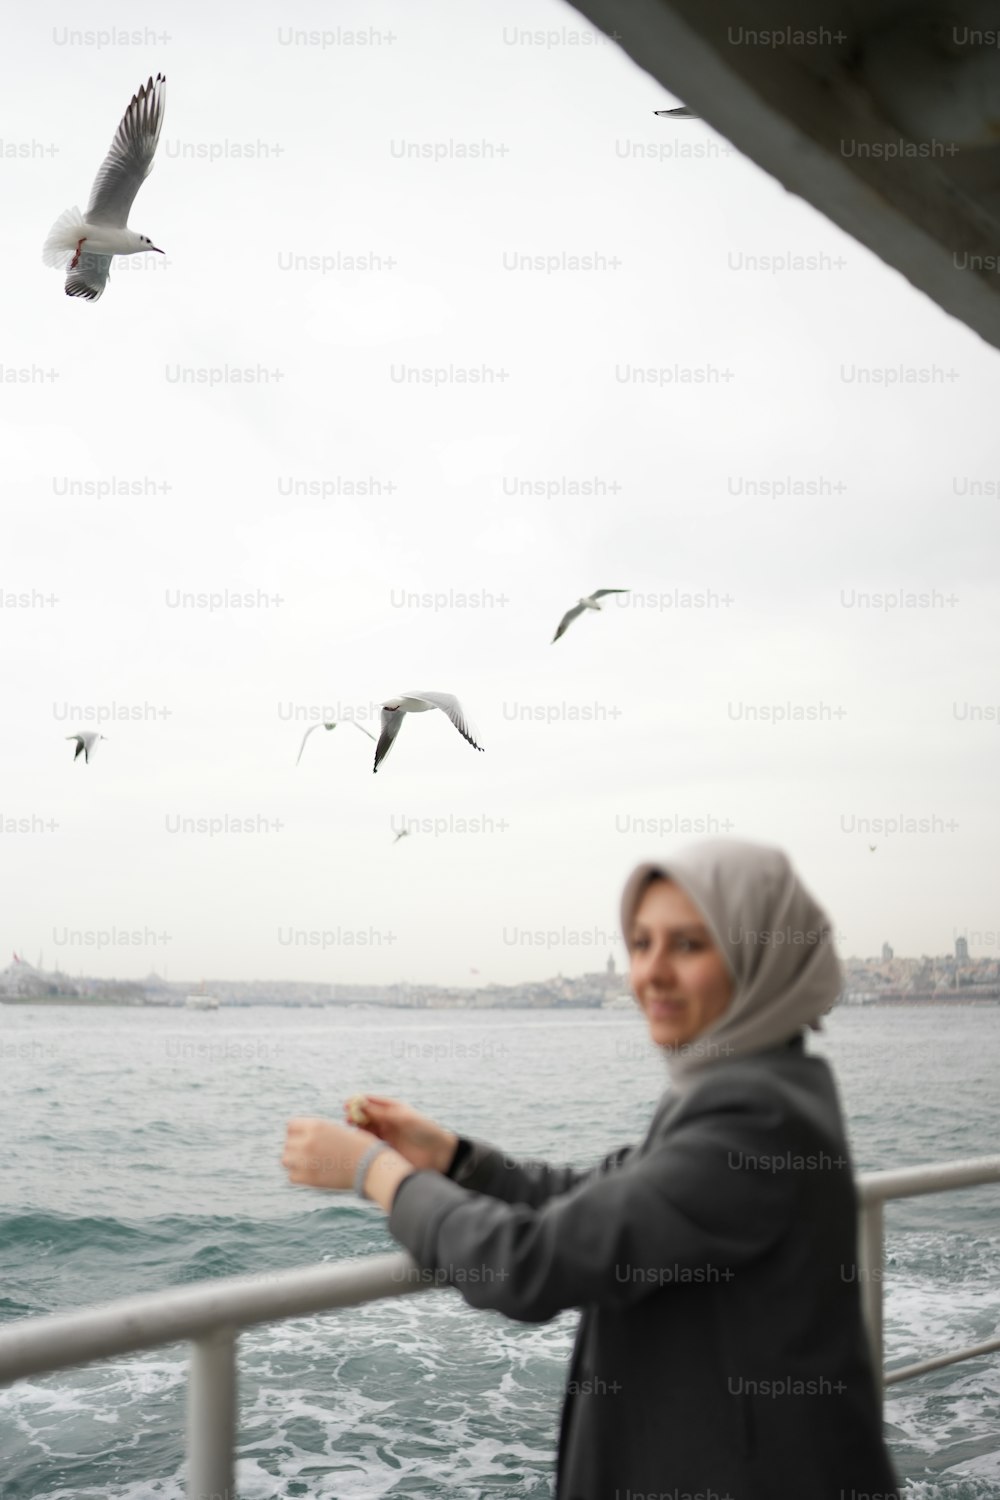 Une femme debout sur un bateau regardant des mouettes